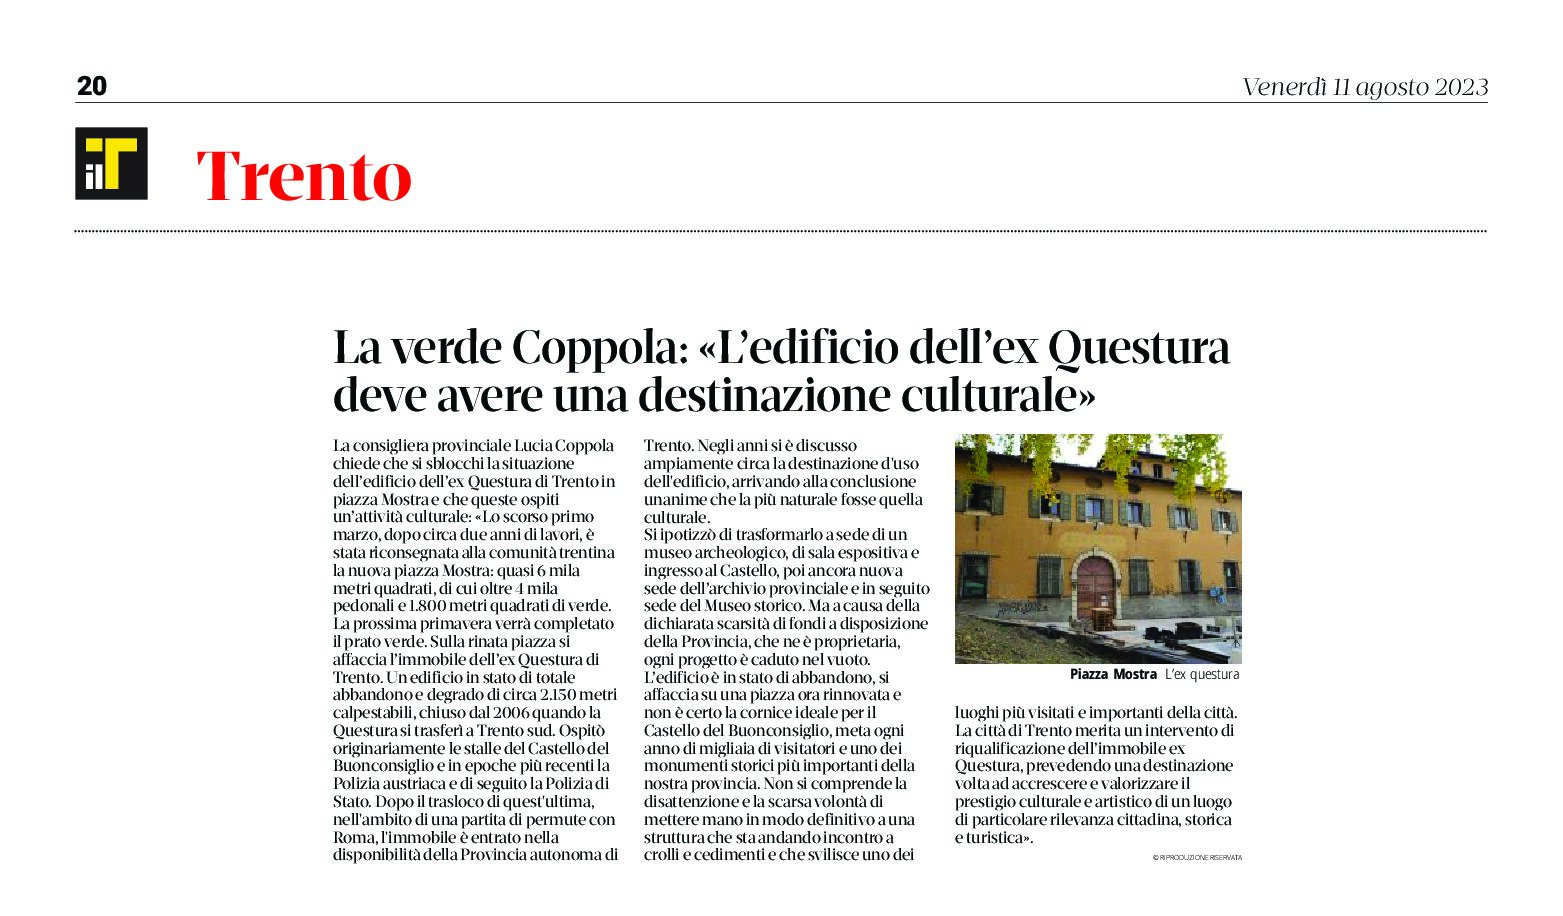 Trento, ex Questura: la Verde Coppola “l’edificio deve avere una destinazione culturale”